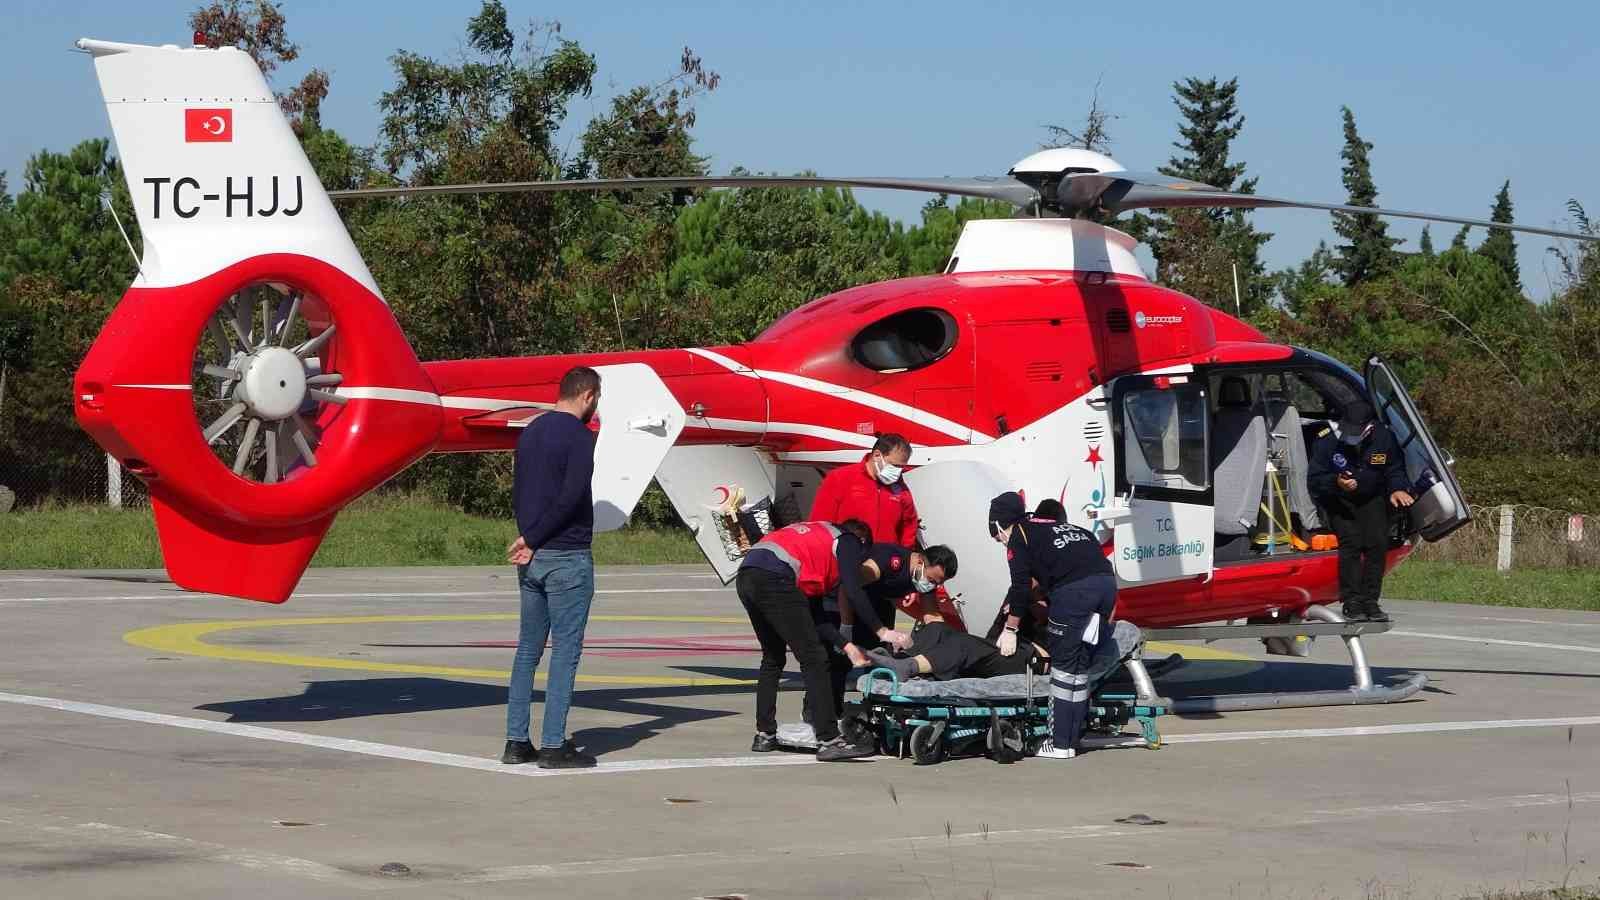 Acil anjiyo olması gereken hasta ambulans helikopterle hastaneye yetiştirildi
